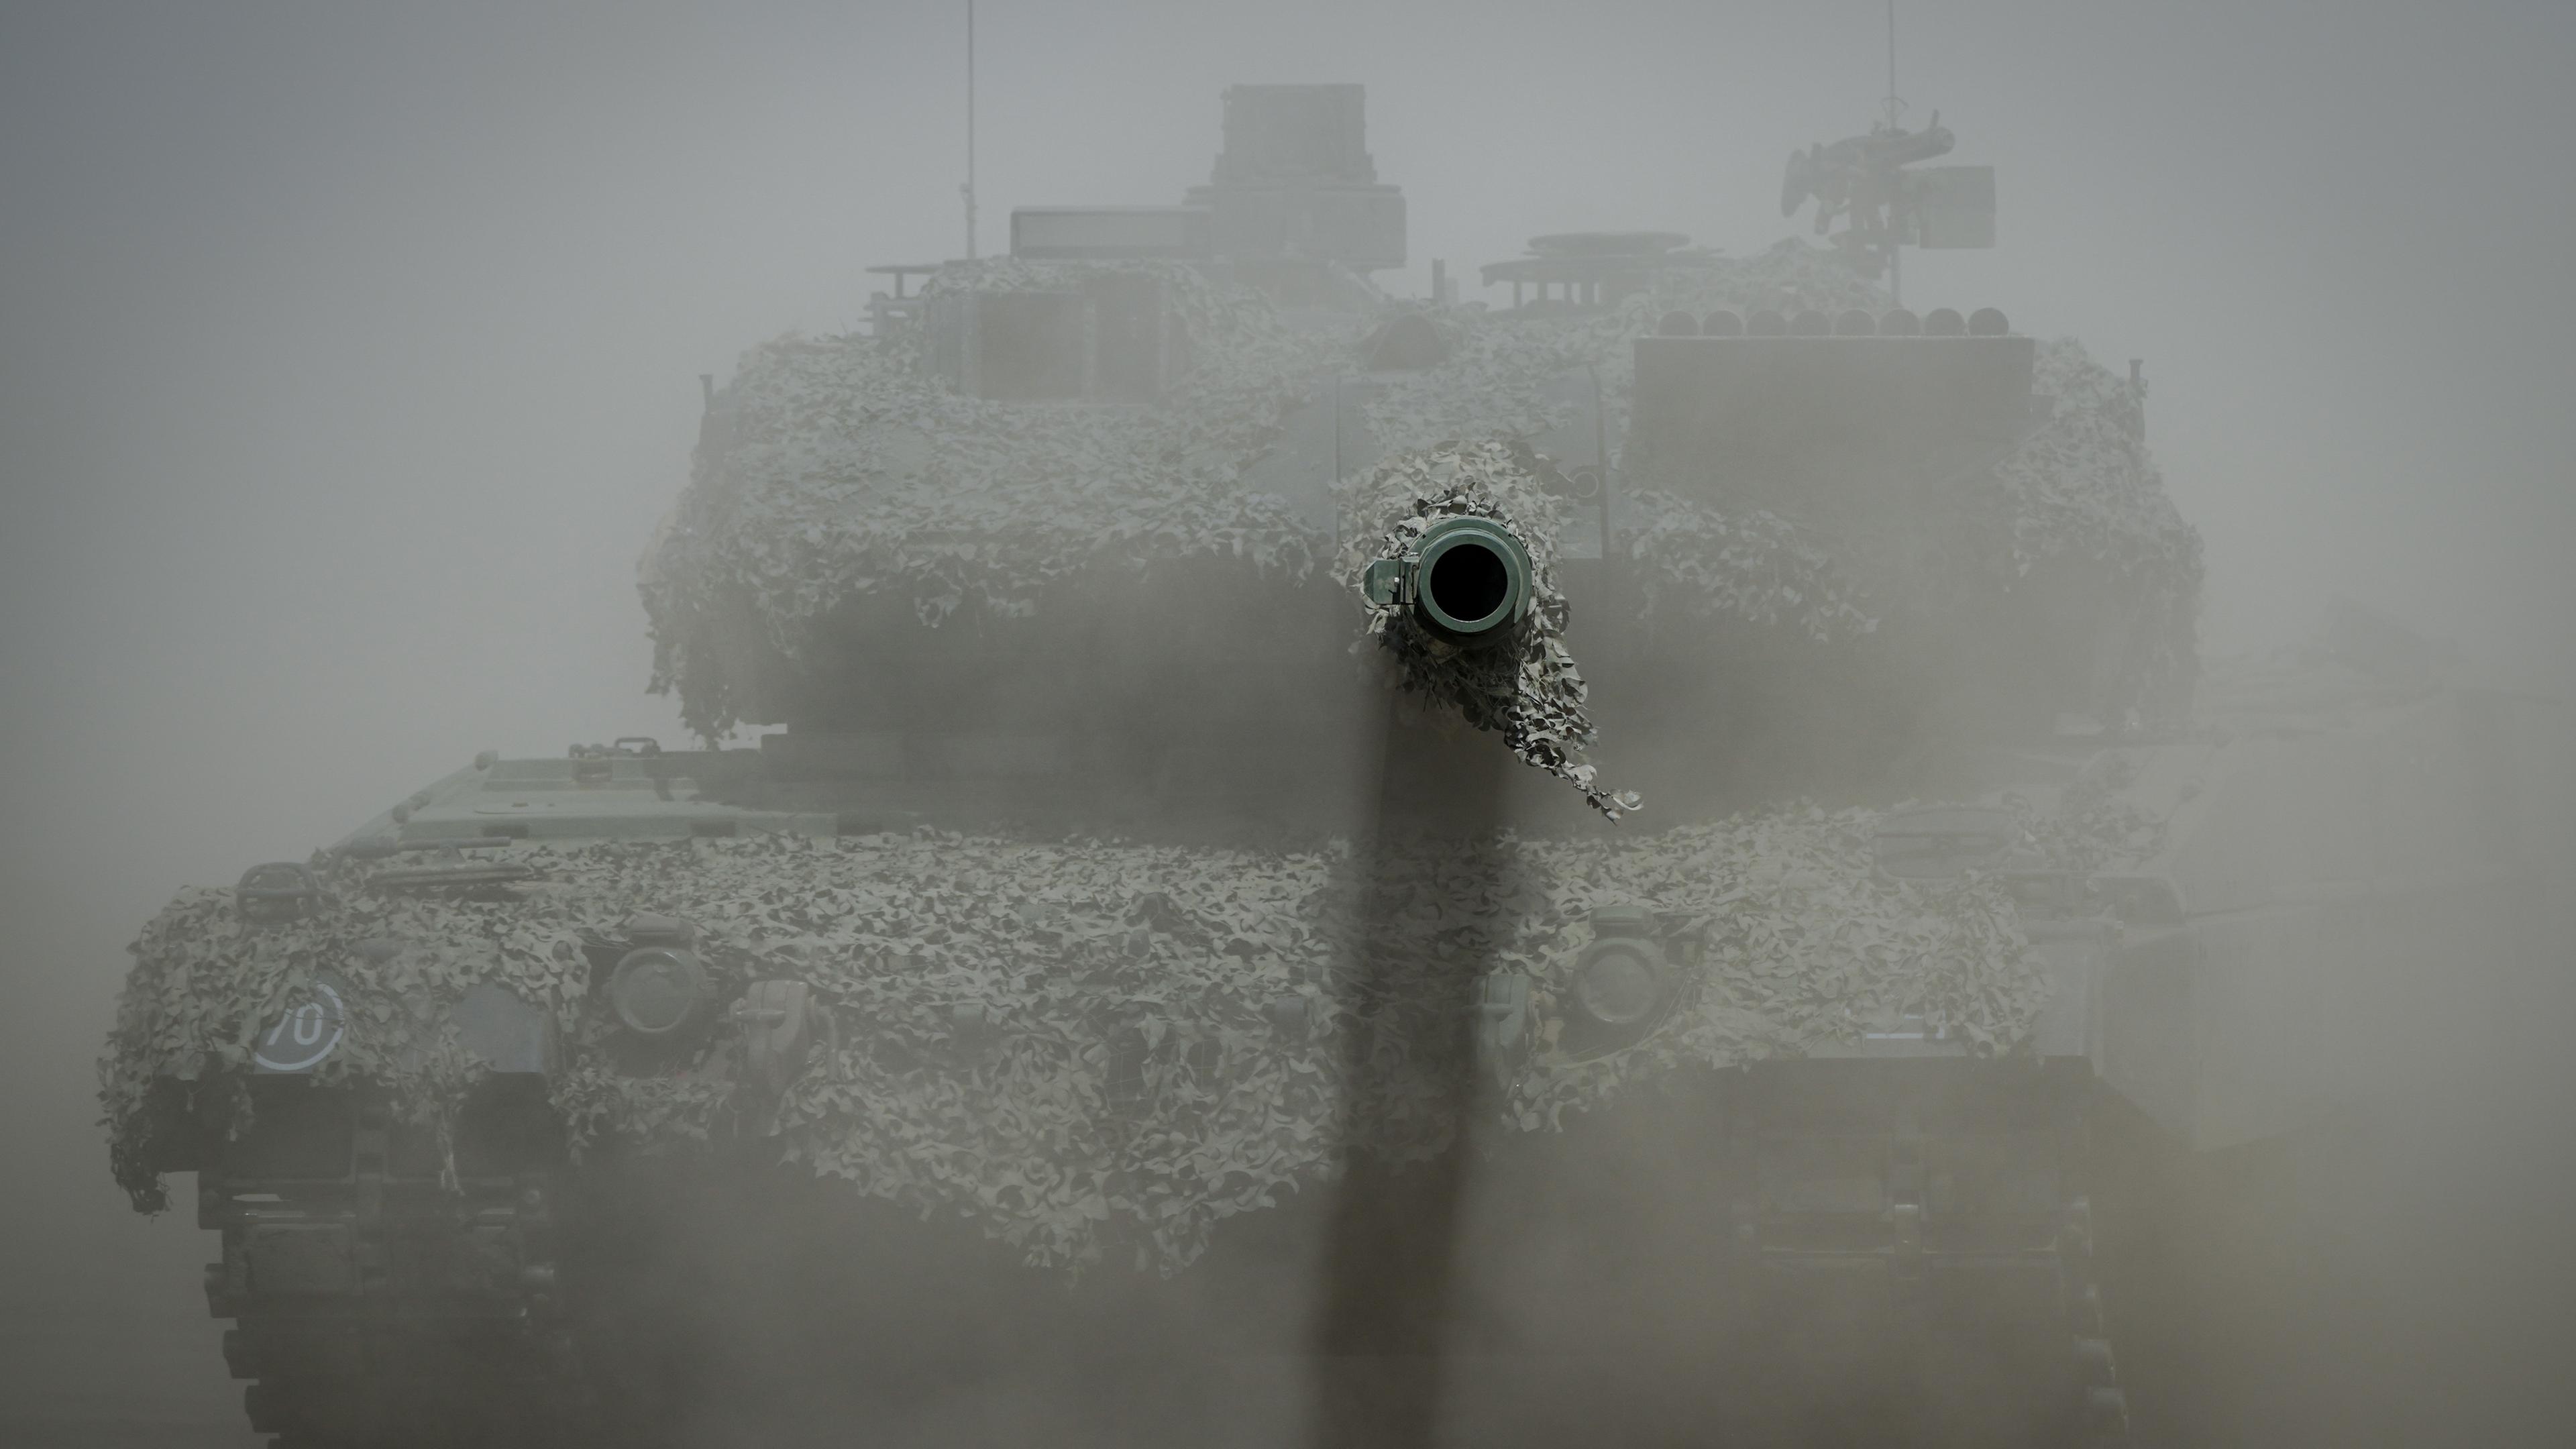 Ein Leopard 2 Kampfpanzer der Bundeswehr ist im Staub bei der Nato-Übung "Griffin Storm" zu sehen, das Kanonenrohr ragt aus der Staubwolke heraus.